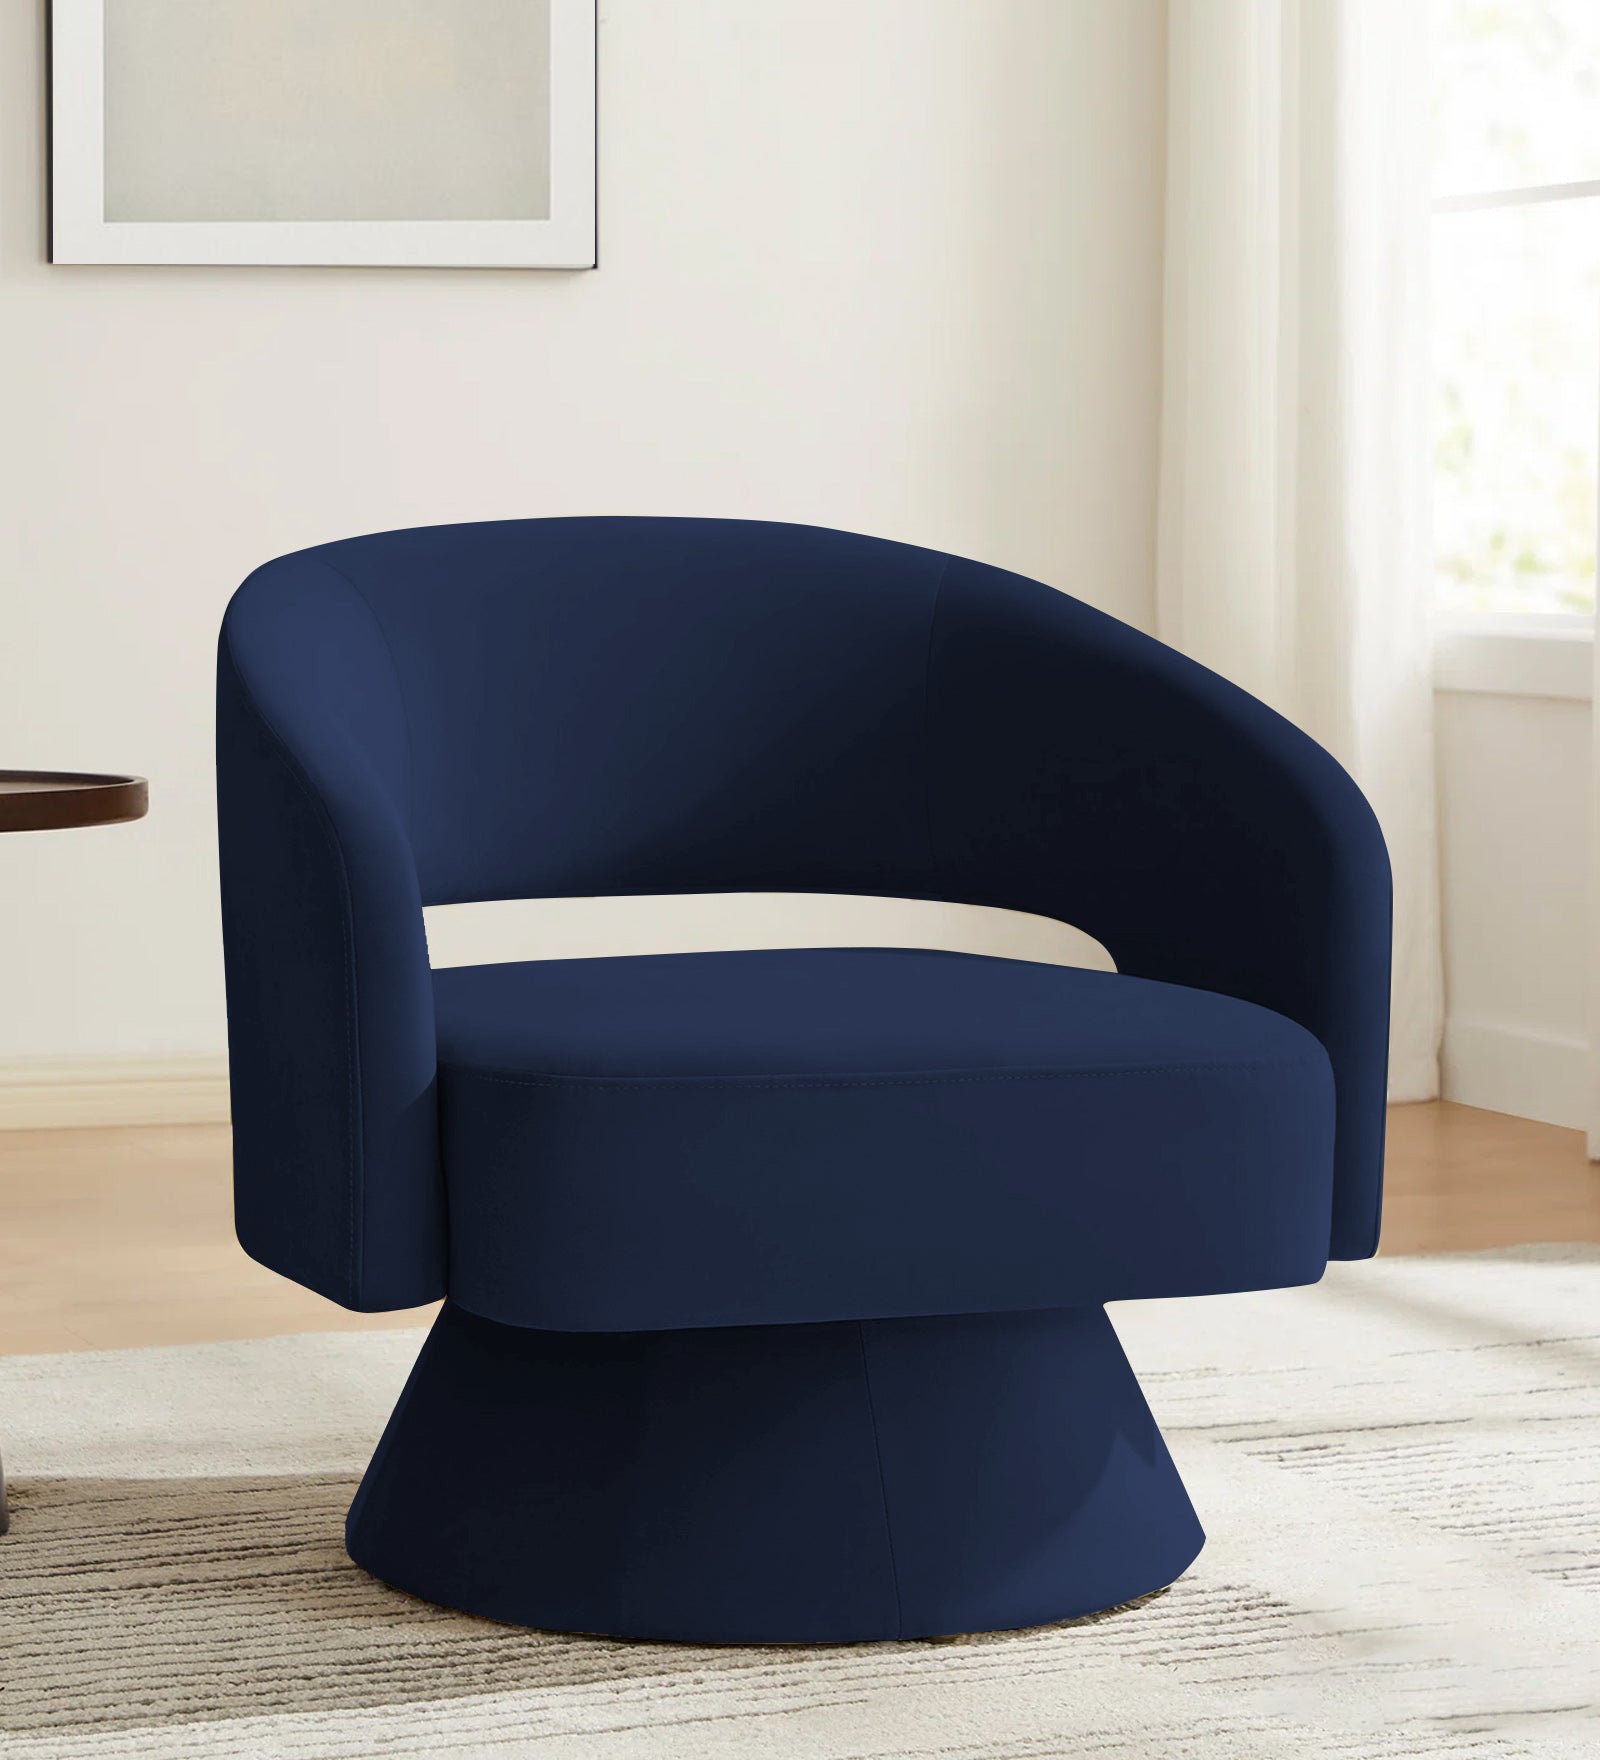 Pendra Velvet Swivel Chair in Indigo Blue Colour